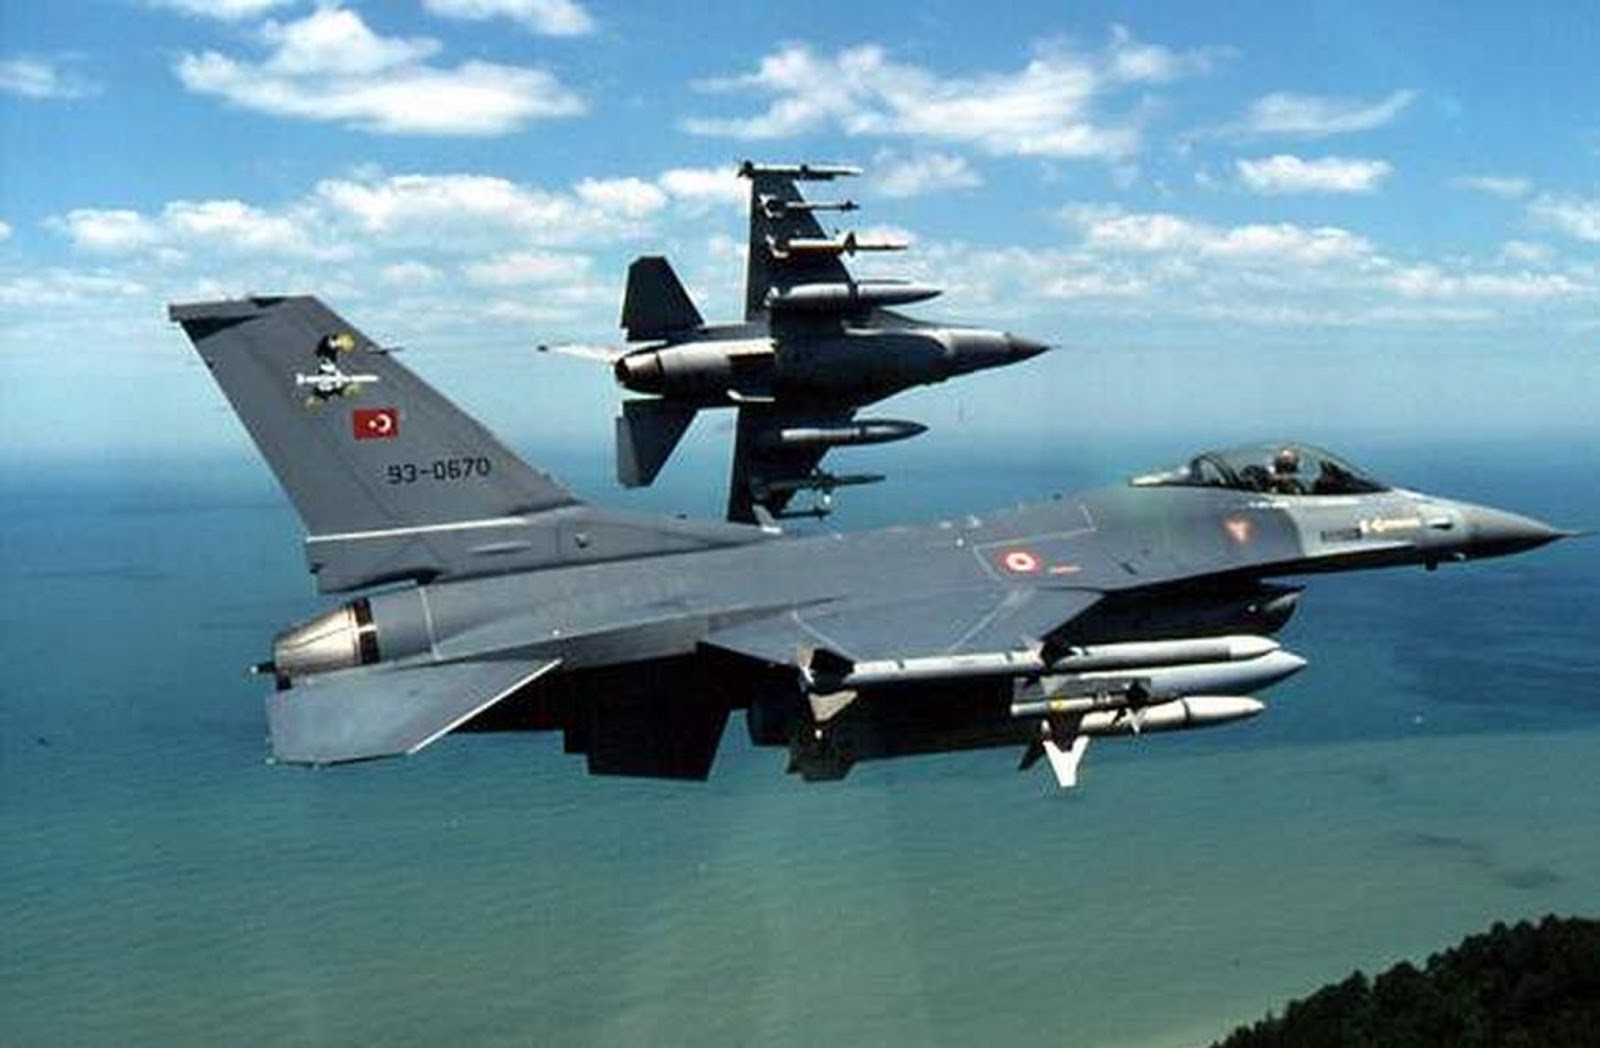 Την ώρα που τα ελληνικά F-16 συνόδευαν το αεροπλάνο στα Χανιά τουρκικά μαχητικά έκαναν παραβιάσεις στο Αιγαίο